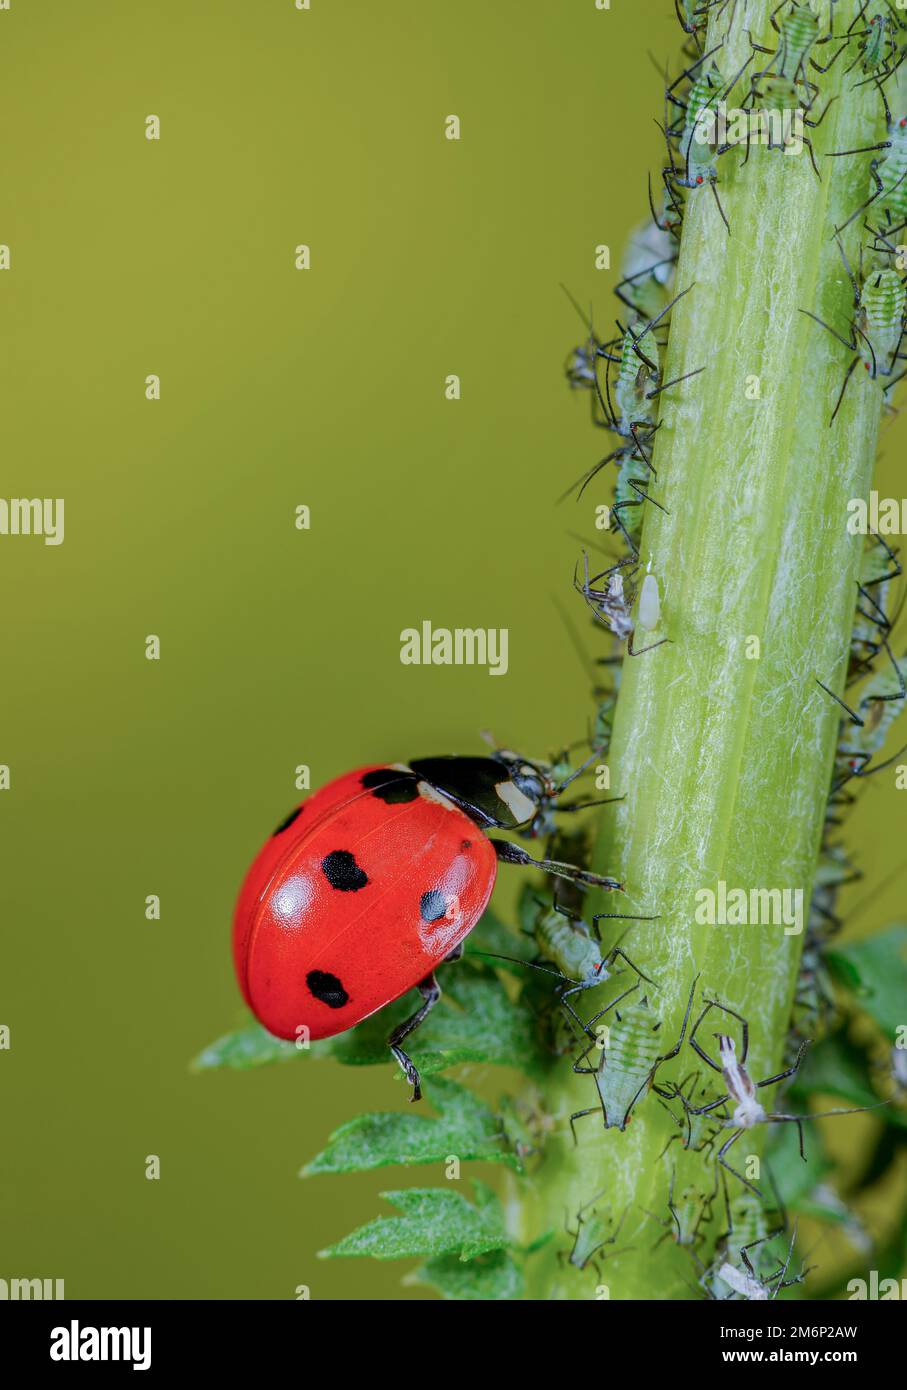 Ladybird eats aphid Stock Photo